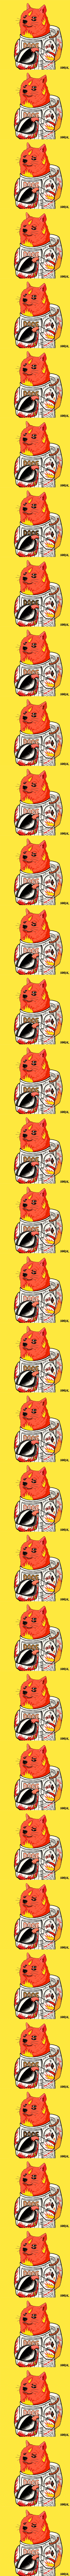 Rocket Doge #5 _Doge on Fire